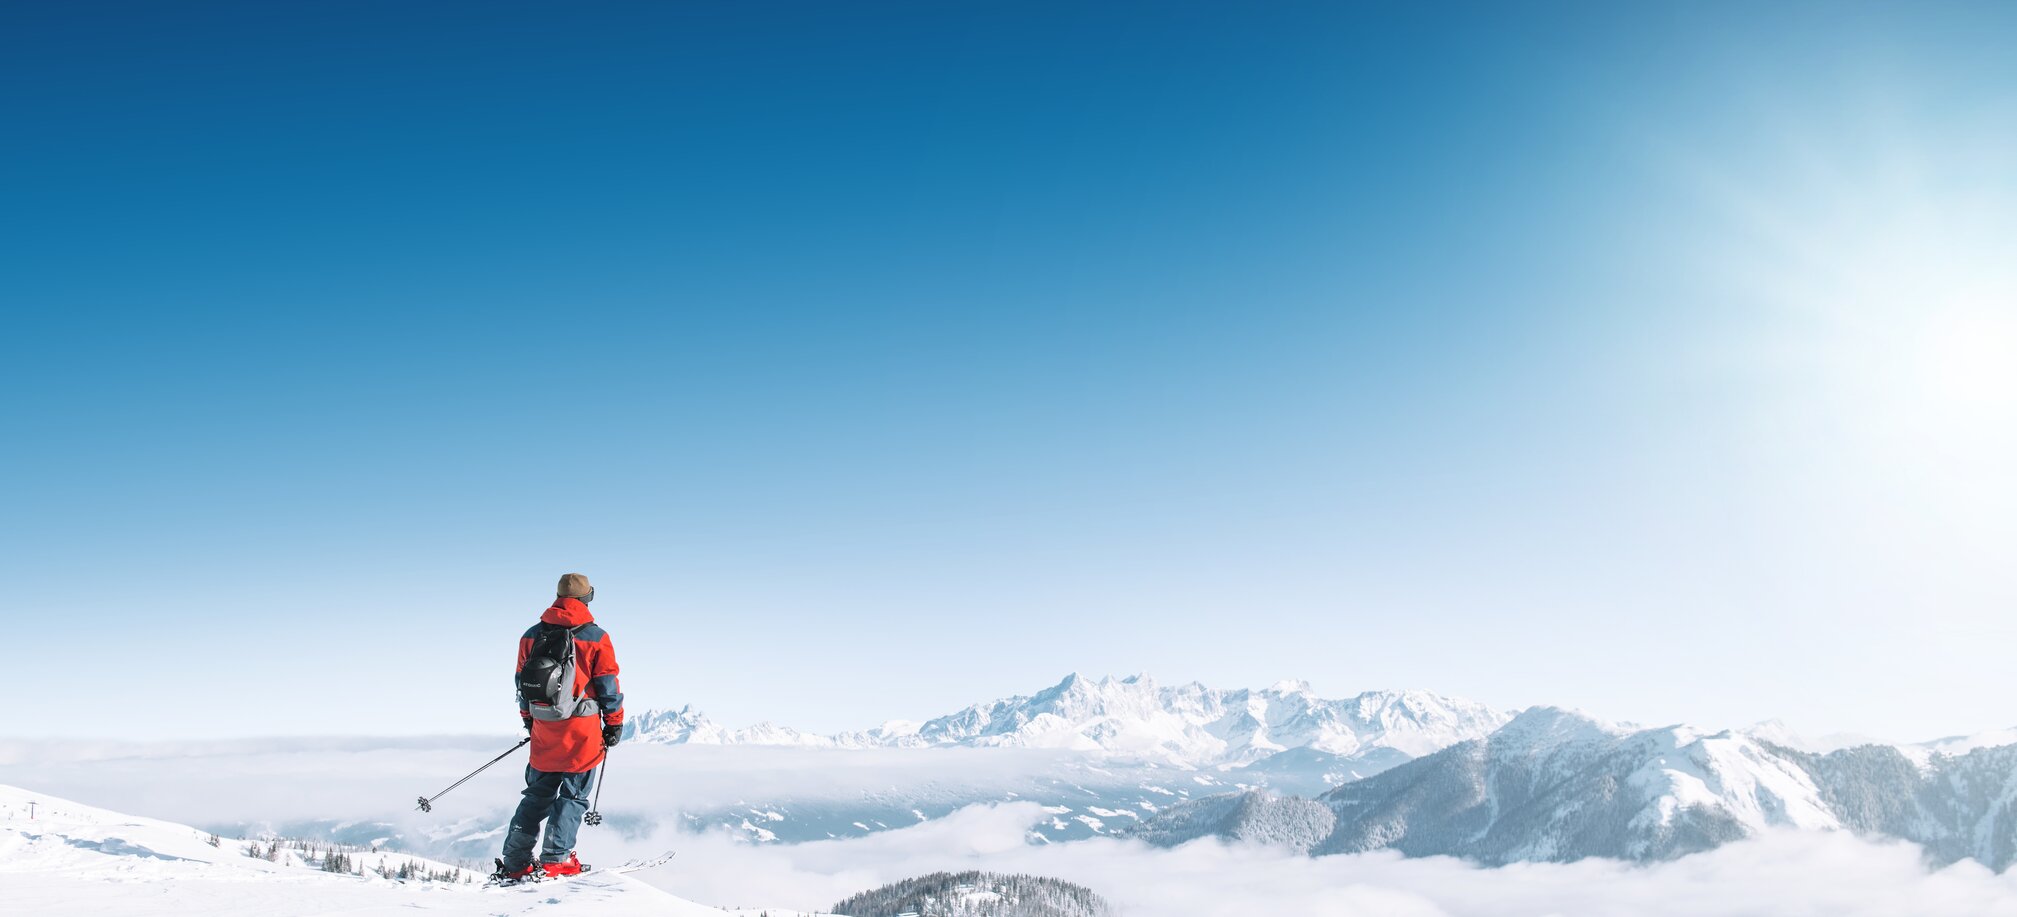 Skifahrer mit roter Skijacke steht  auf dem Schnee und Blickt die umliegenden Berge an